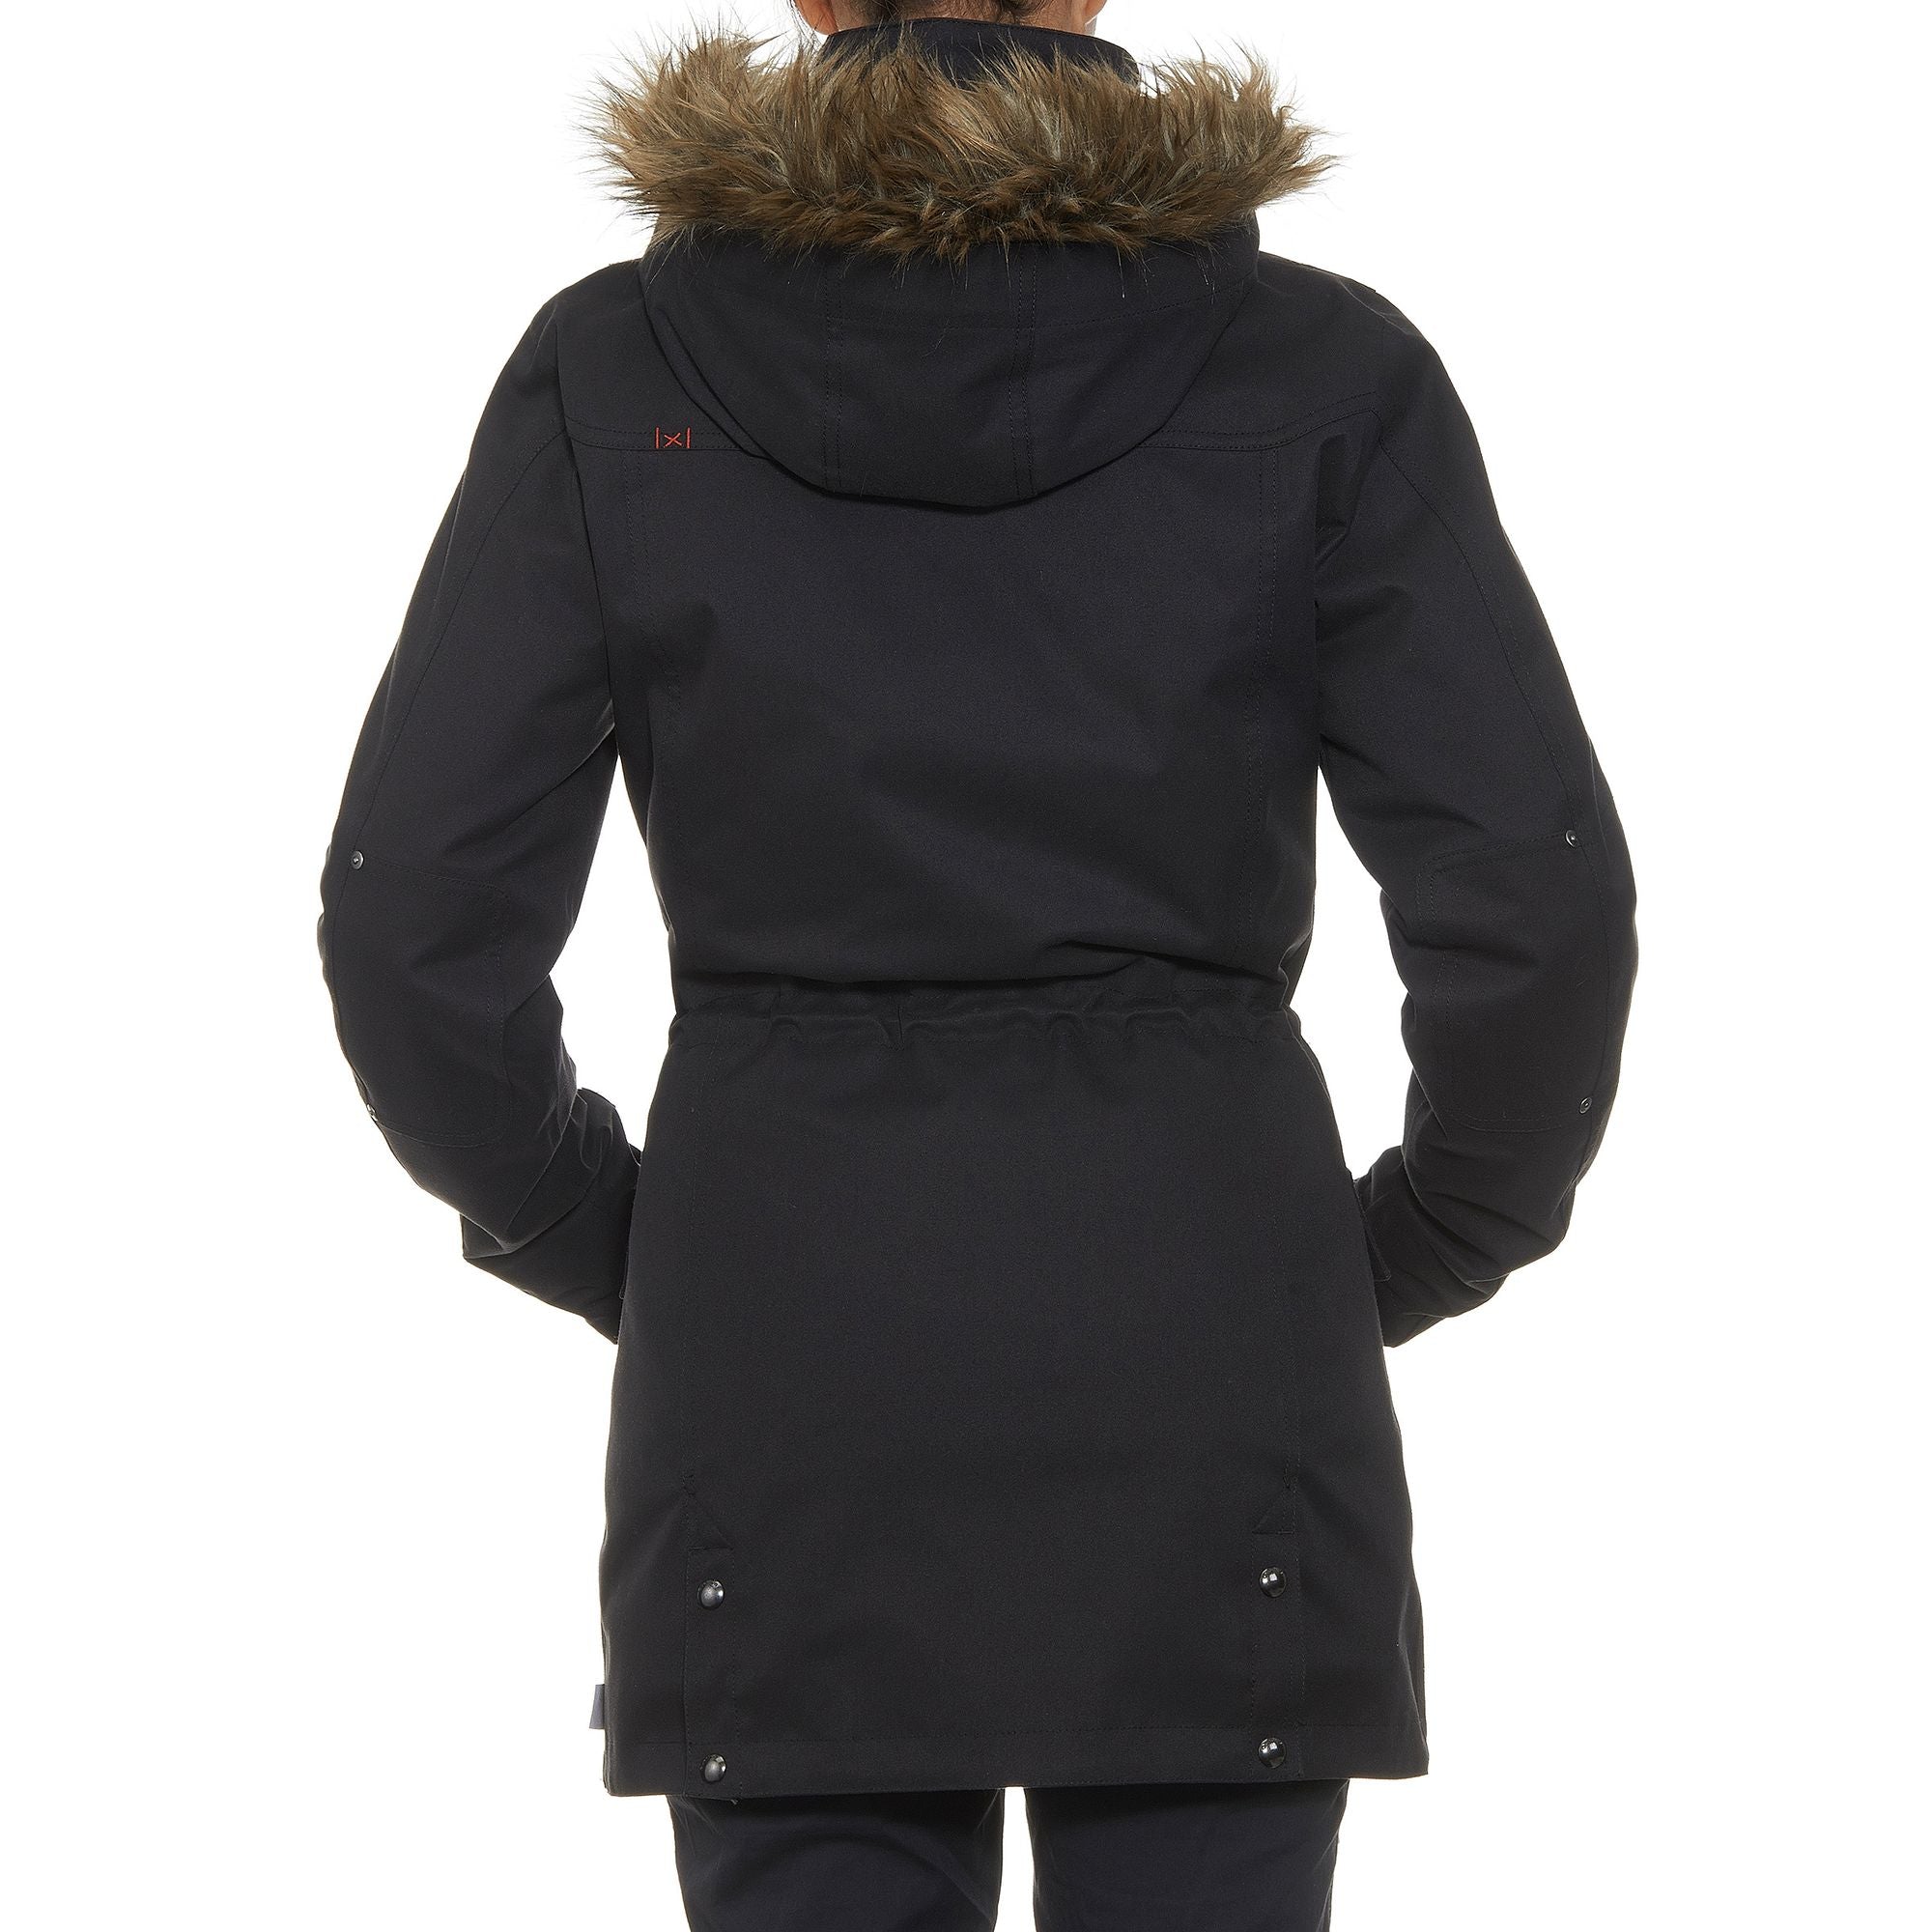 Forclaz Rainwarm 900, 3-in-1 Backpacking Jacket, Women's